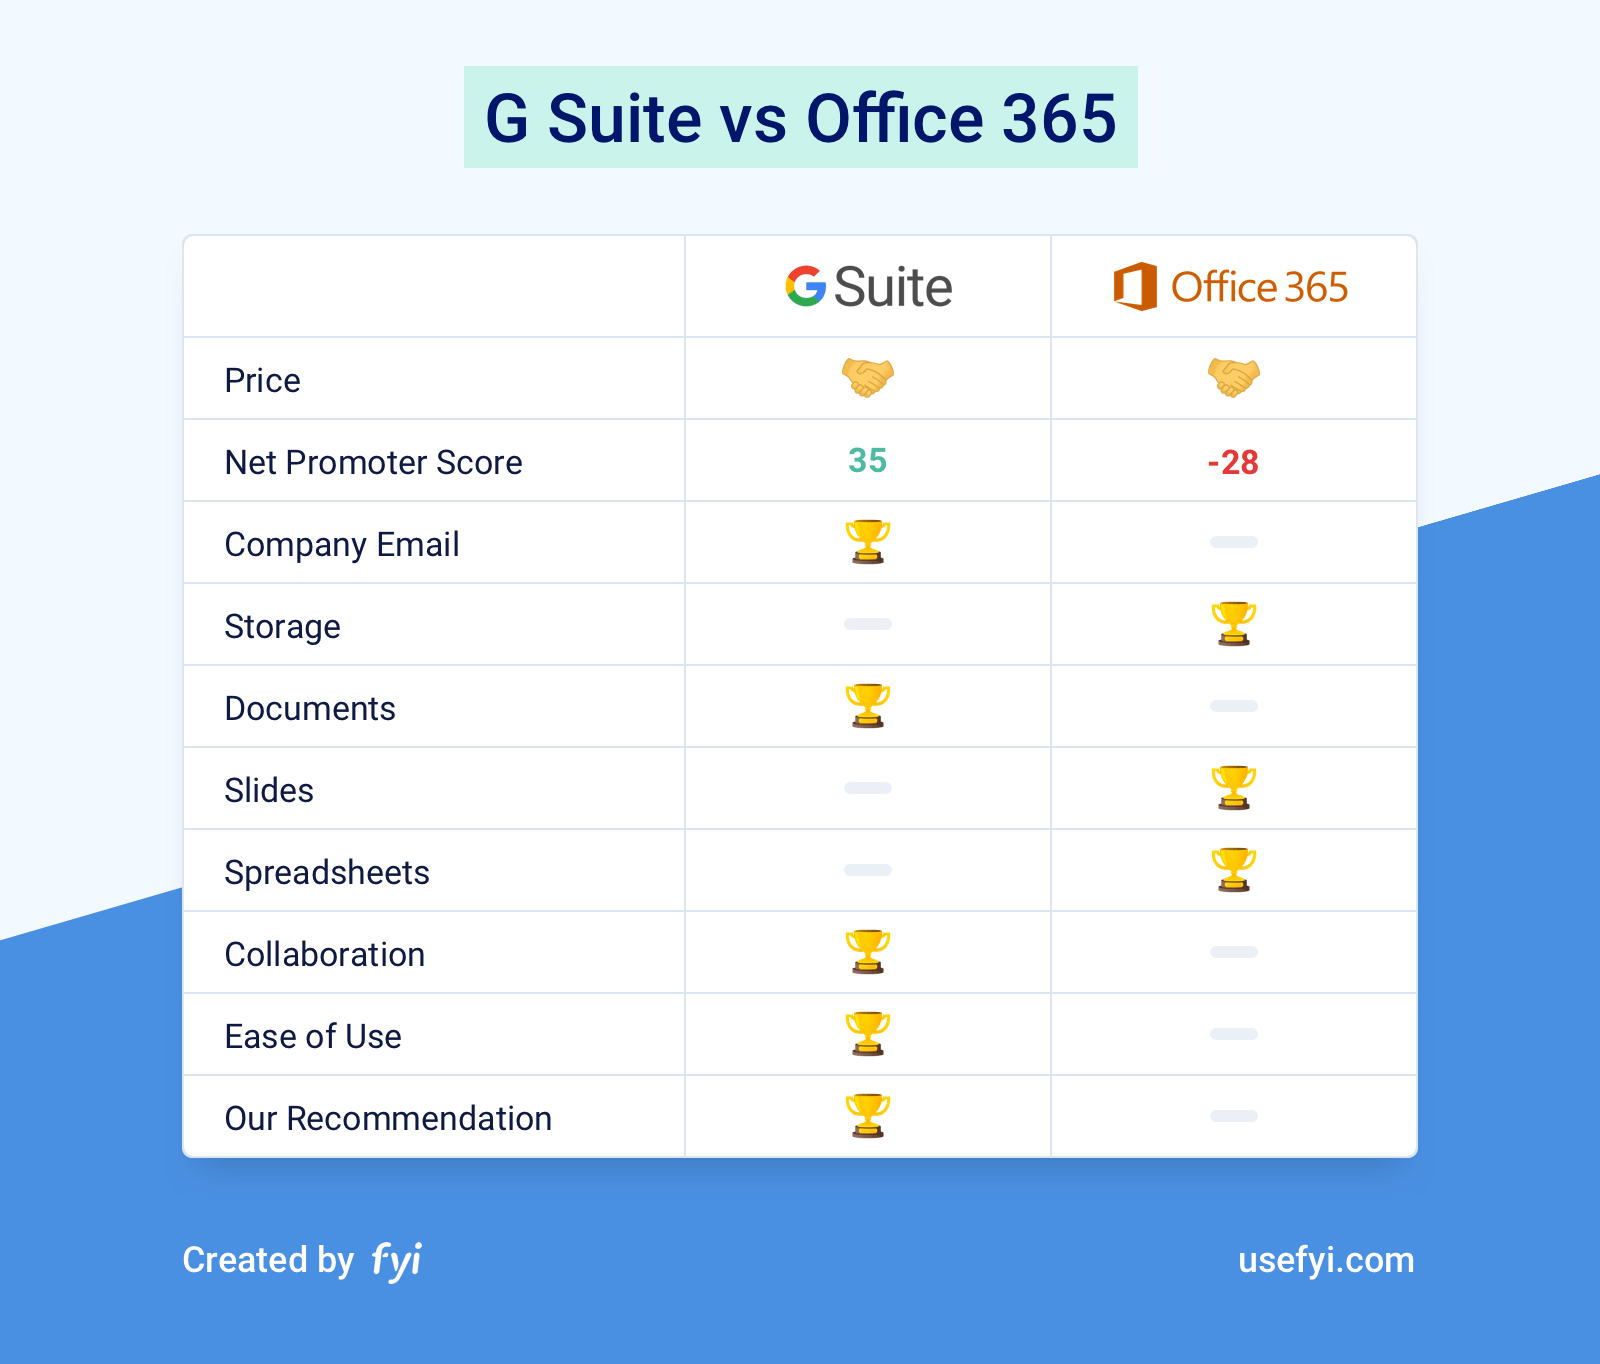 Office 365 Plans Comparison Chart